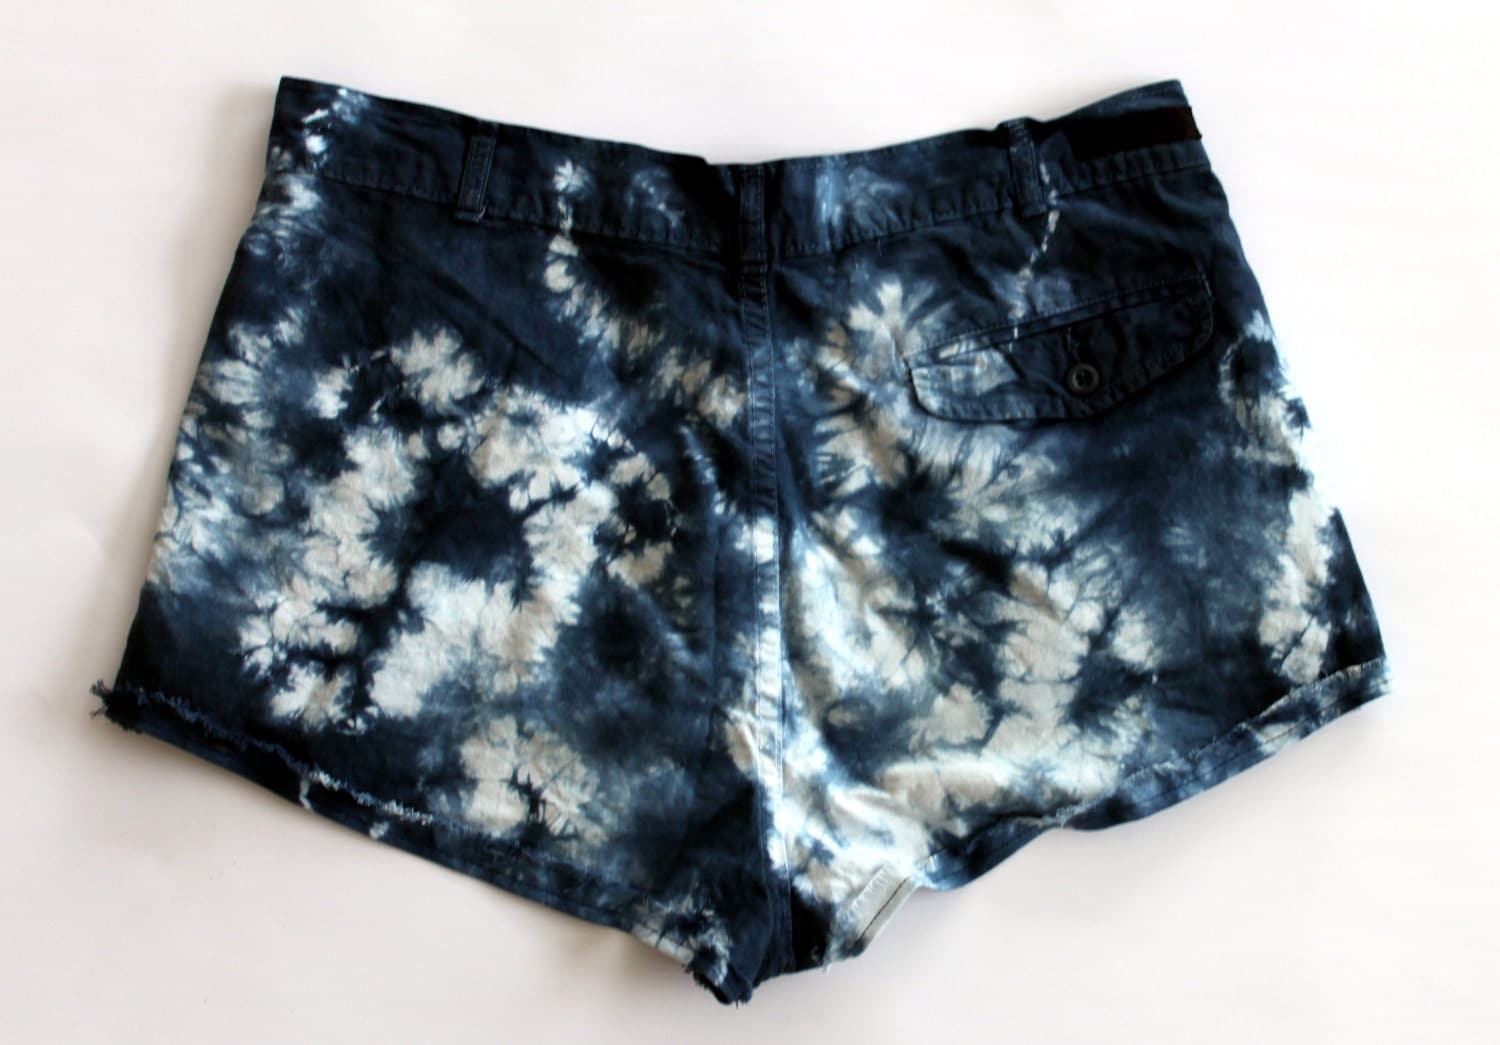 Tye Dye Cotton Short Shorts by shopAB on Etsy